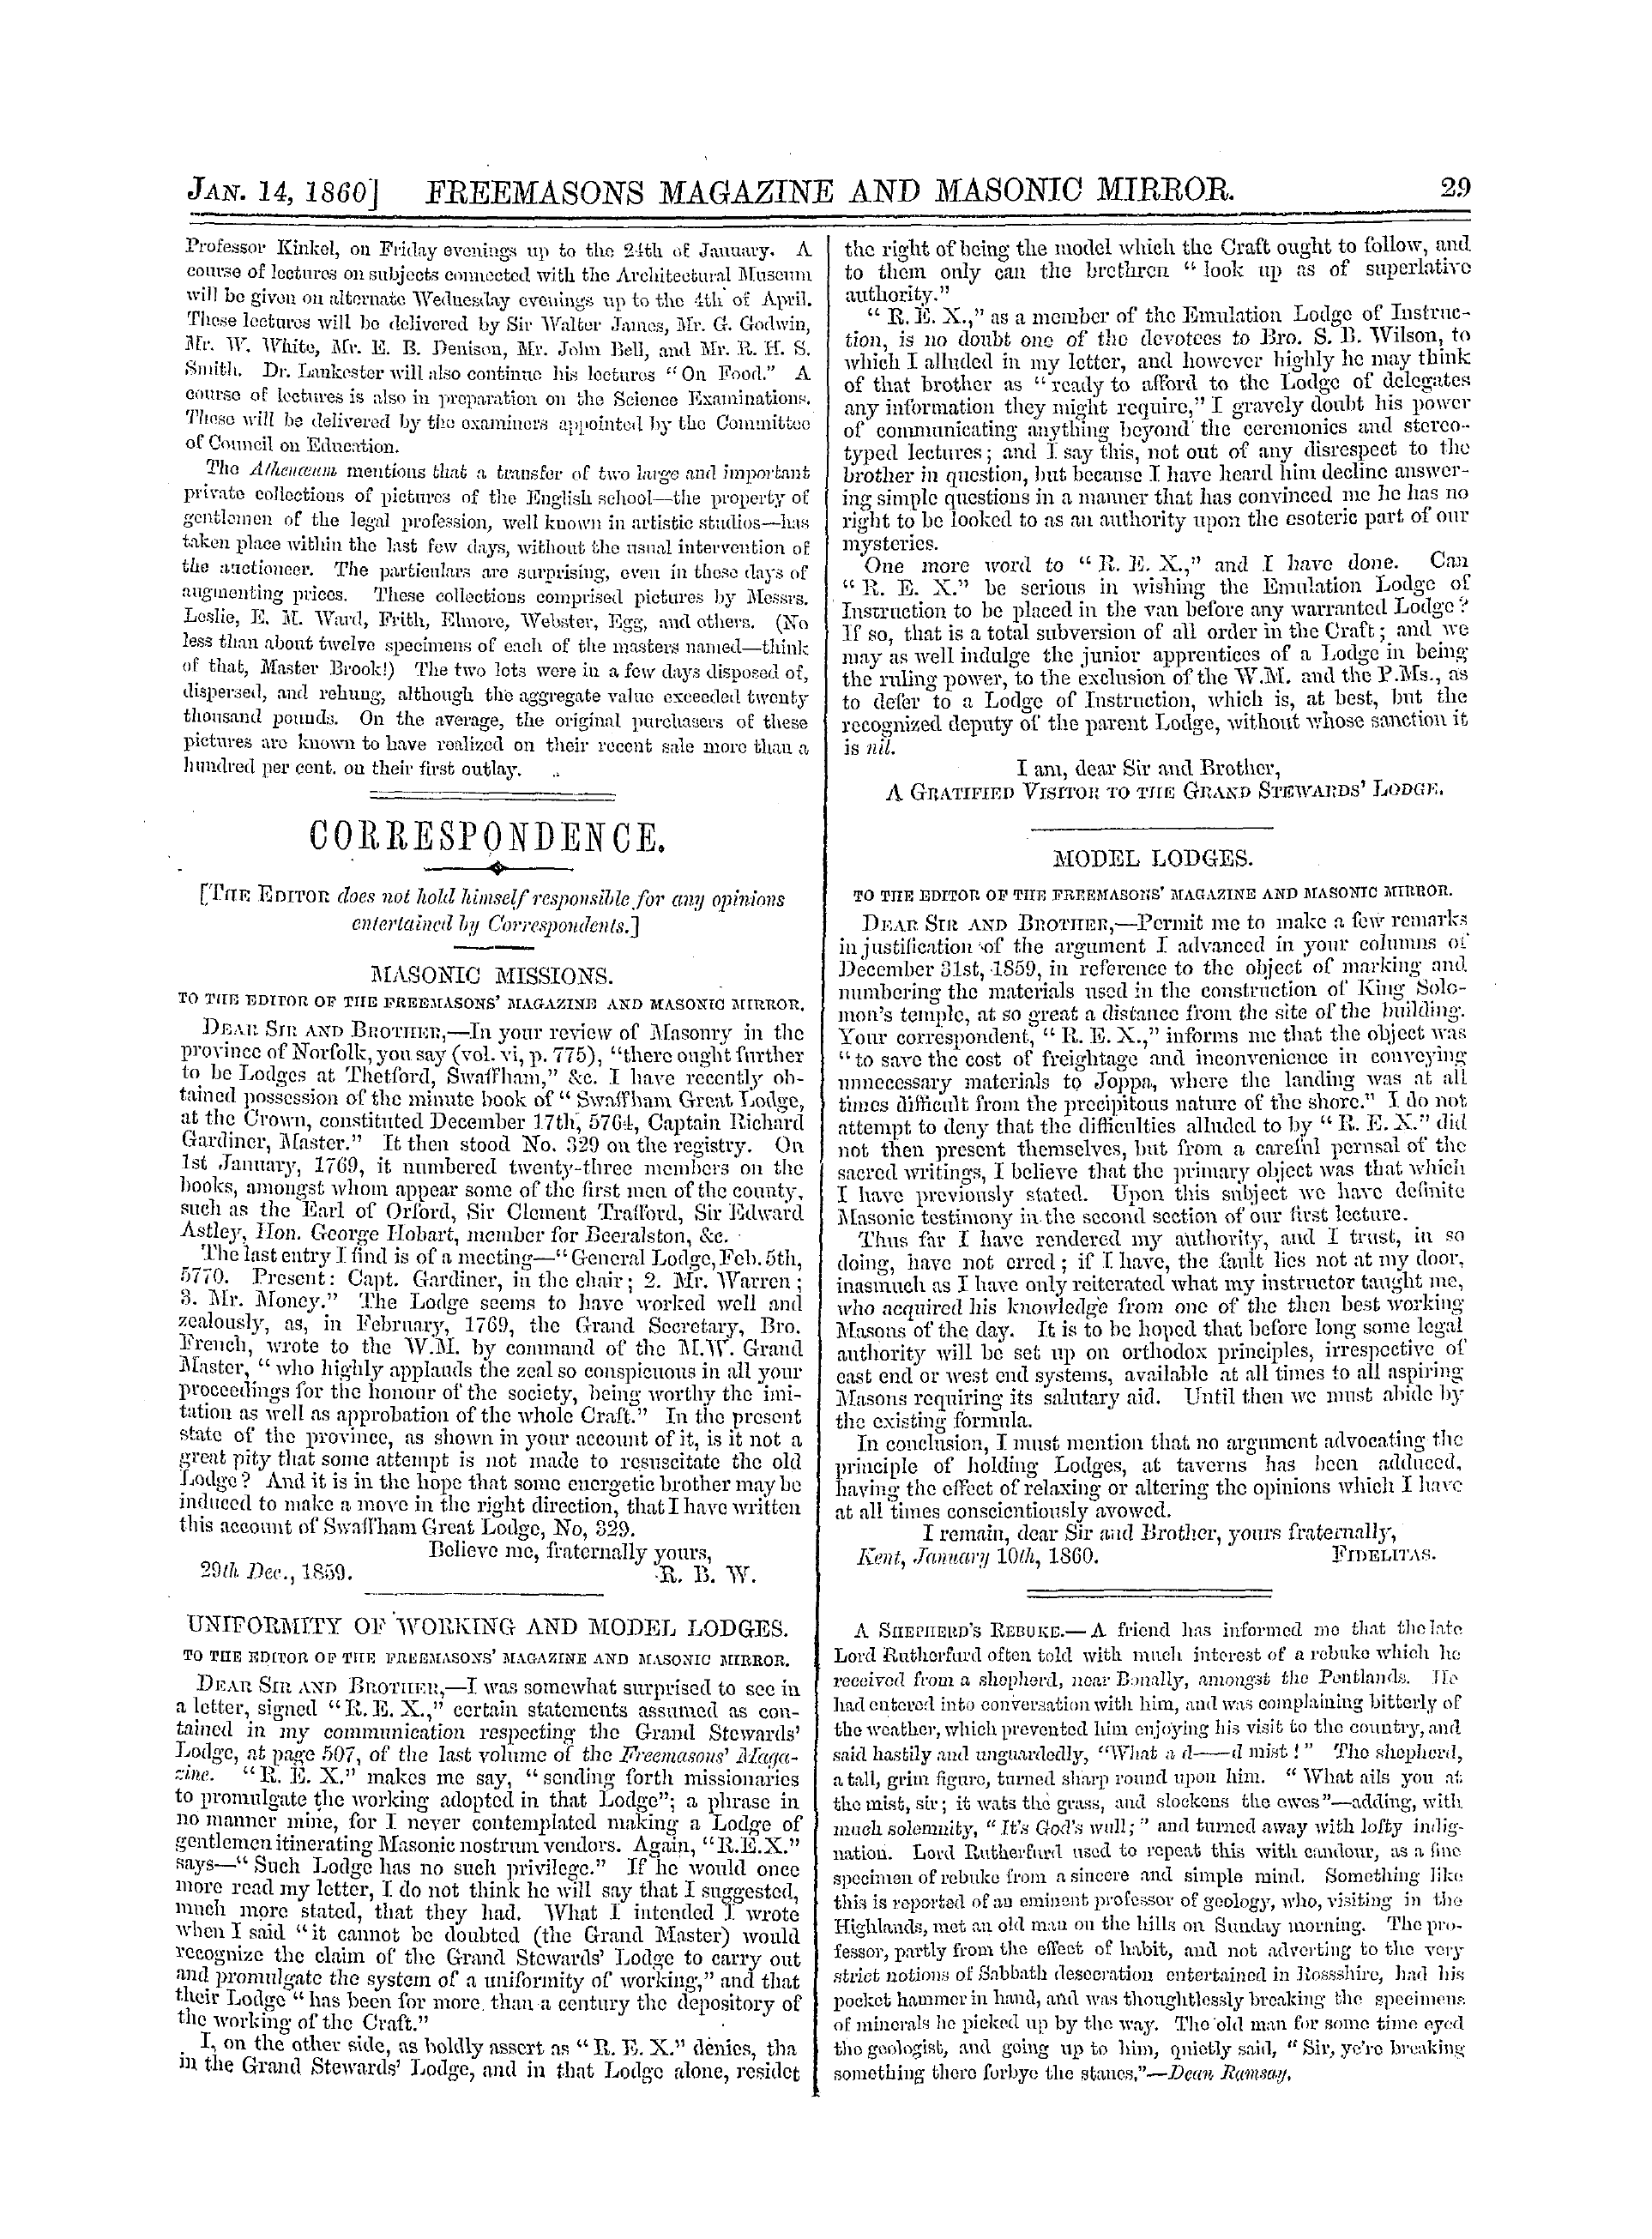 The Freemasons' Monthly Magazine: 1860-01-14: 9